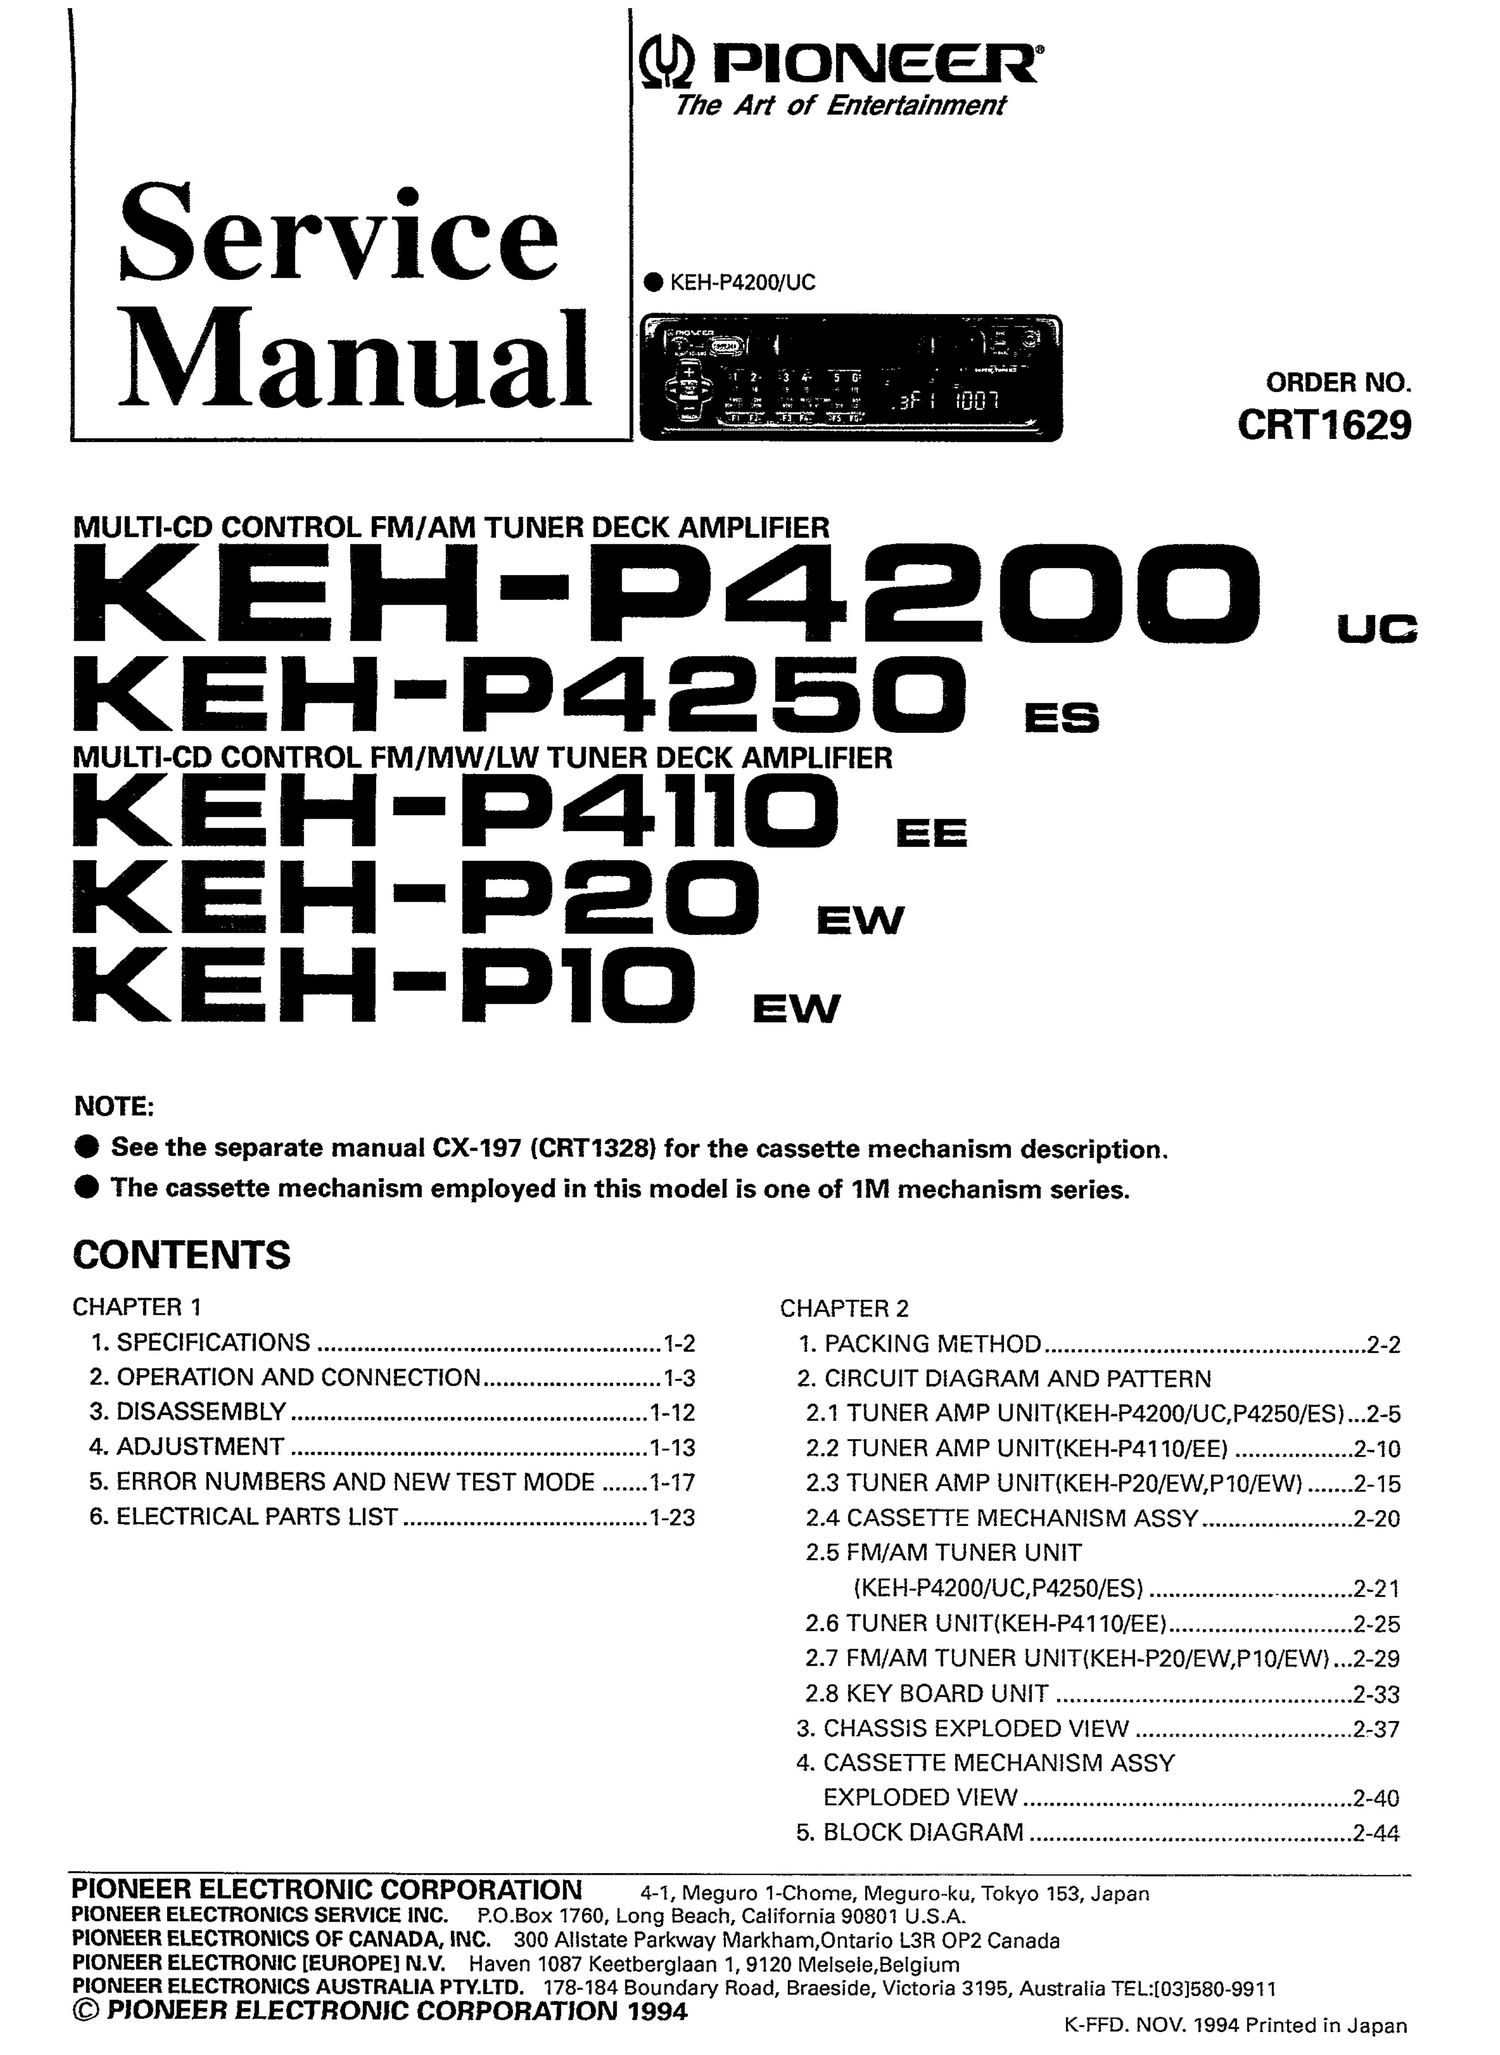 pioneer kehp 20 service manual